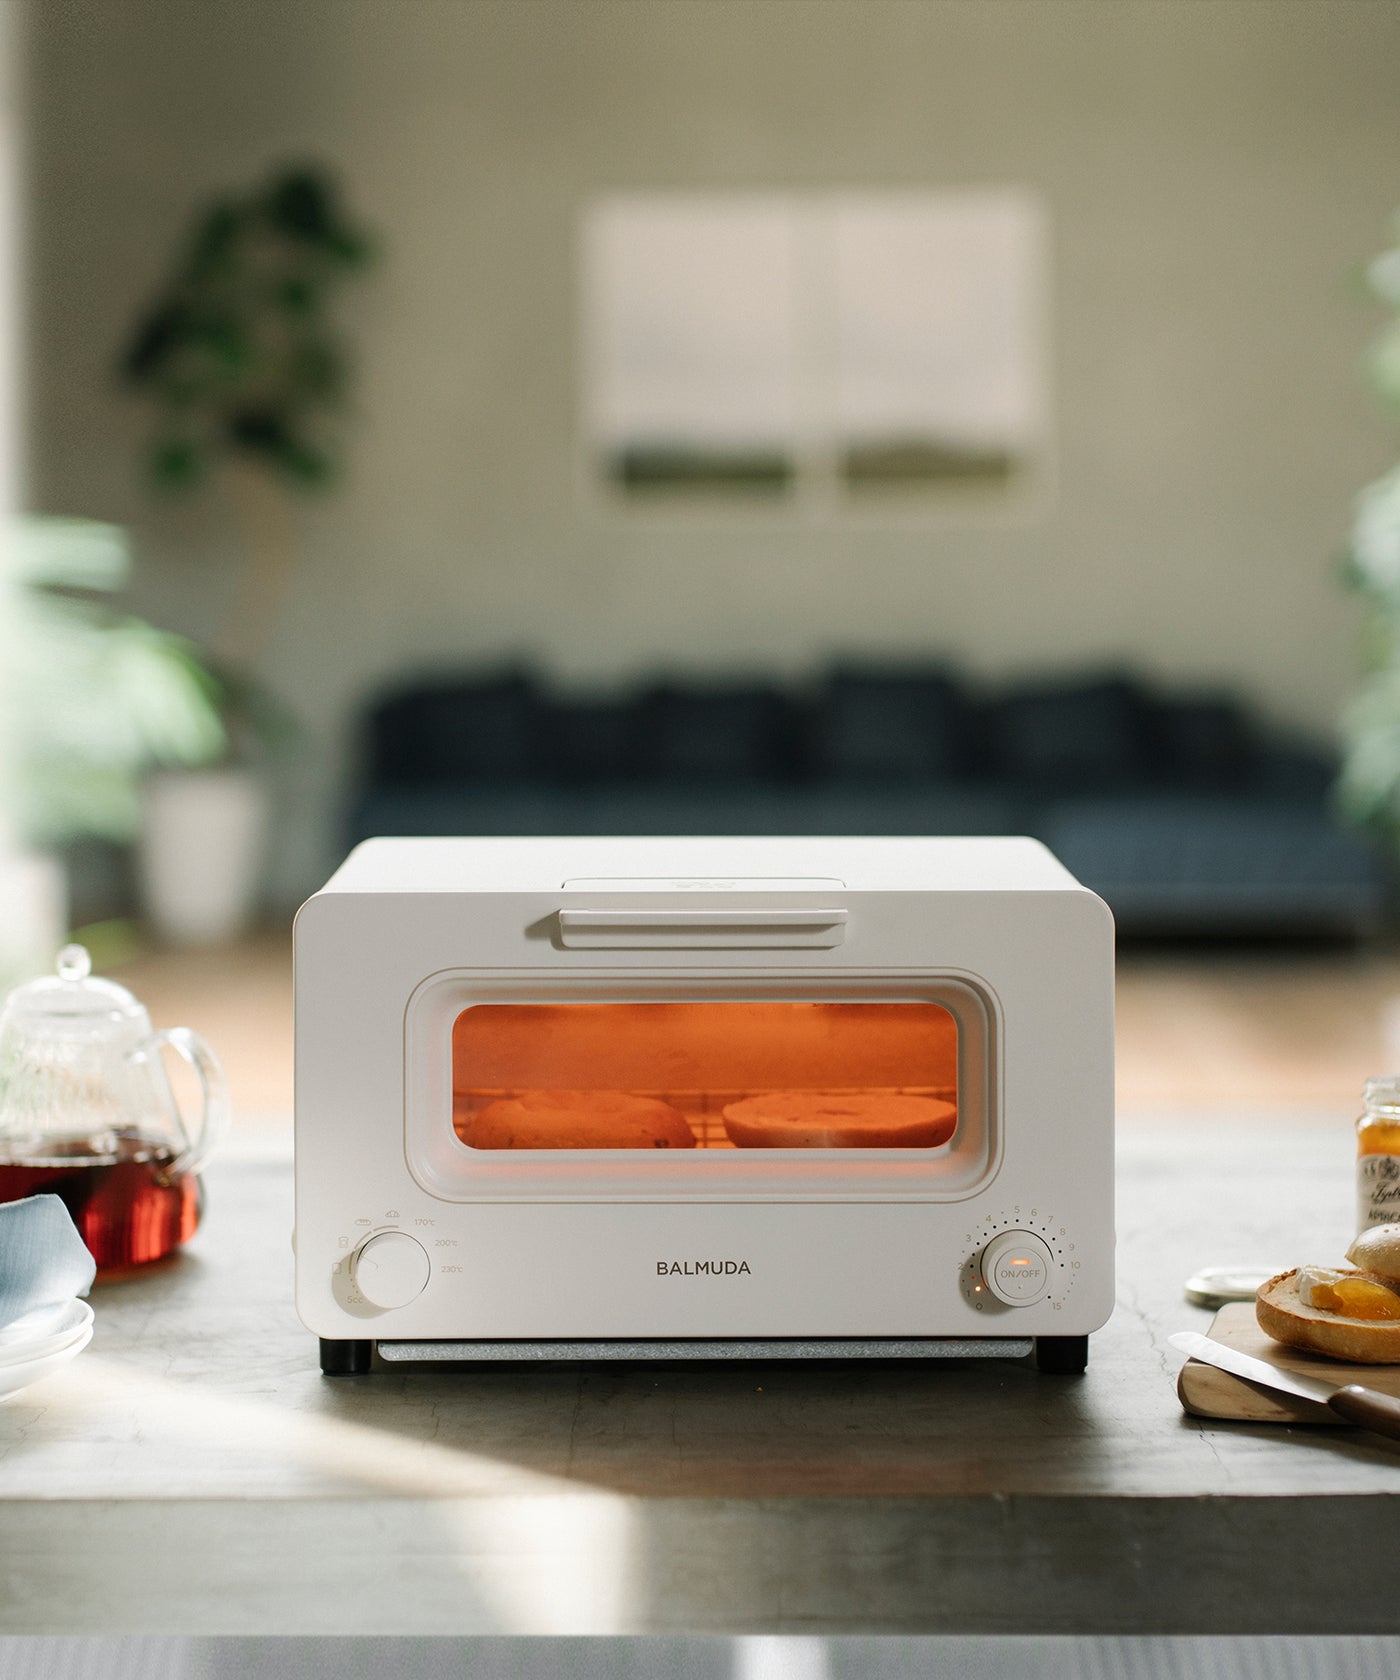 バルミューダ スチームトースター BALMUDA The Toaster - 生活家電